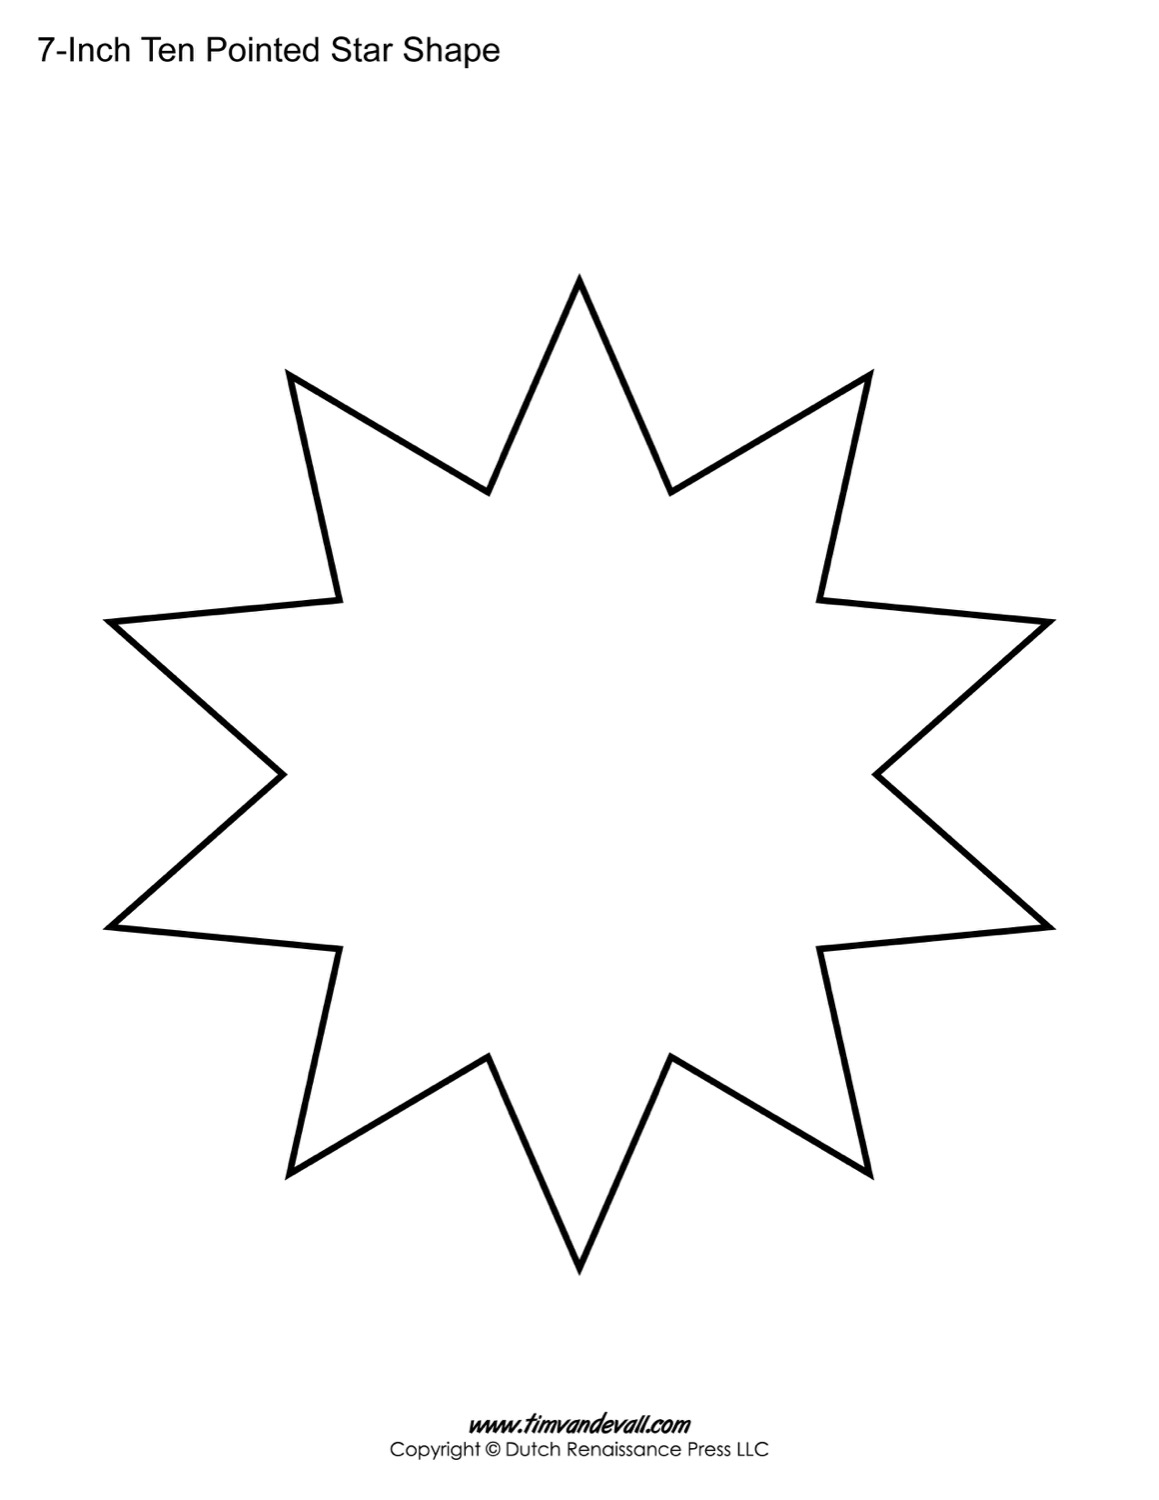 Ten Pointed Star